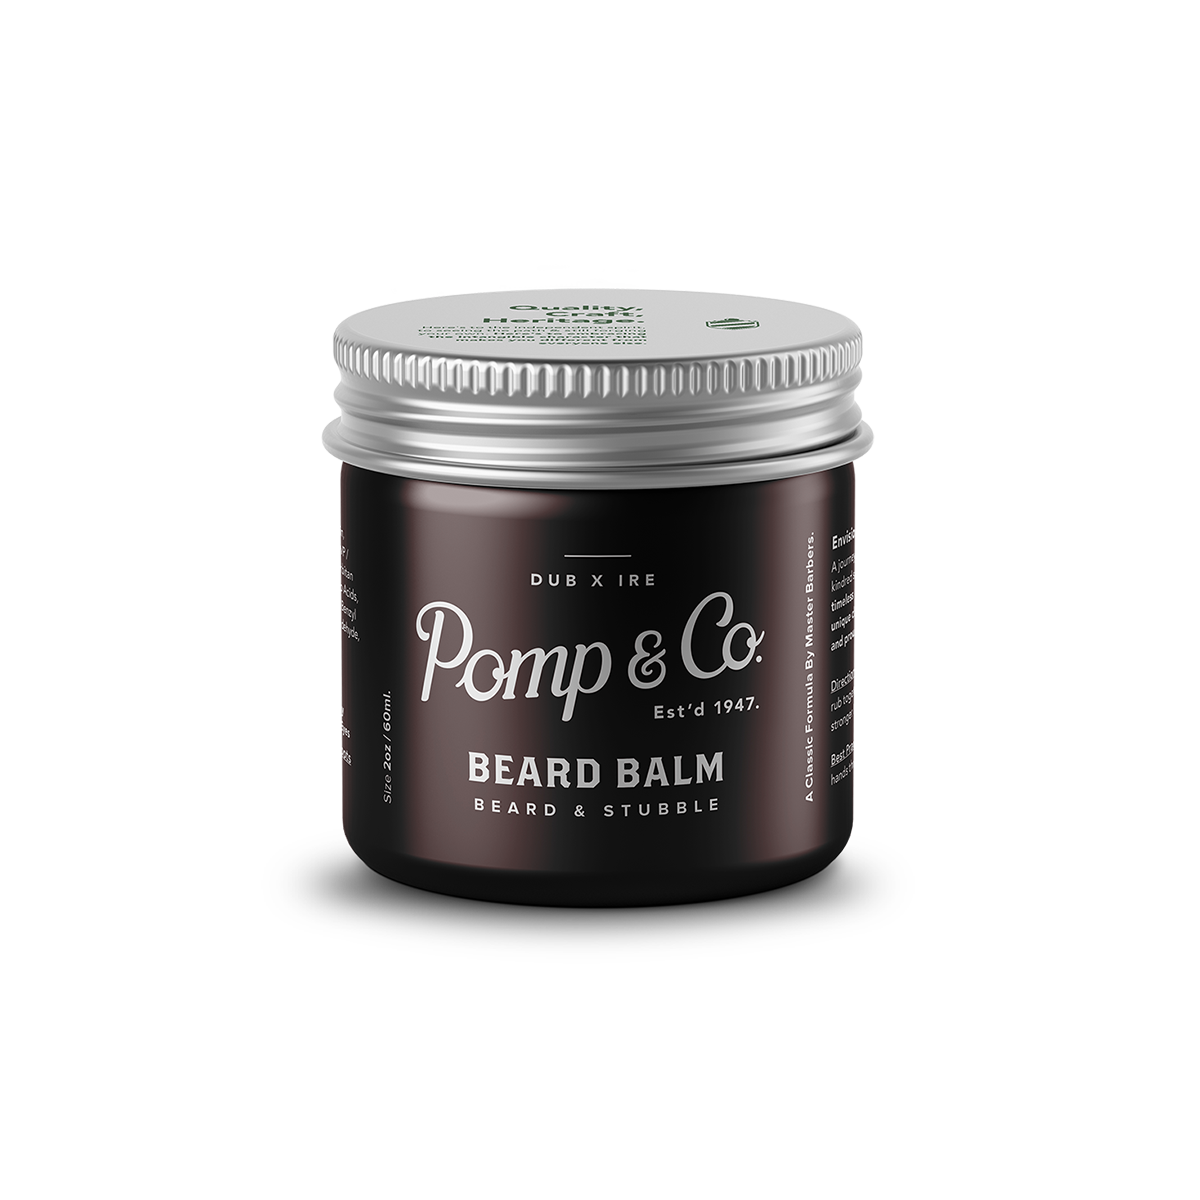 Billede af Beard balm (Skæg balsam) - Pomp&Co.